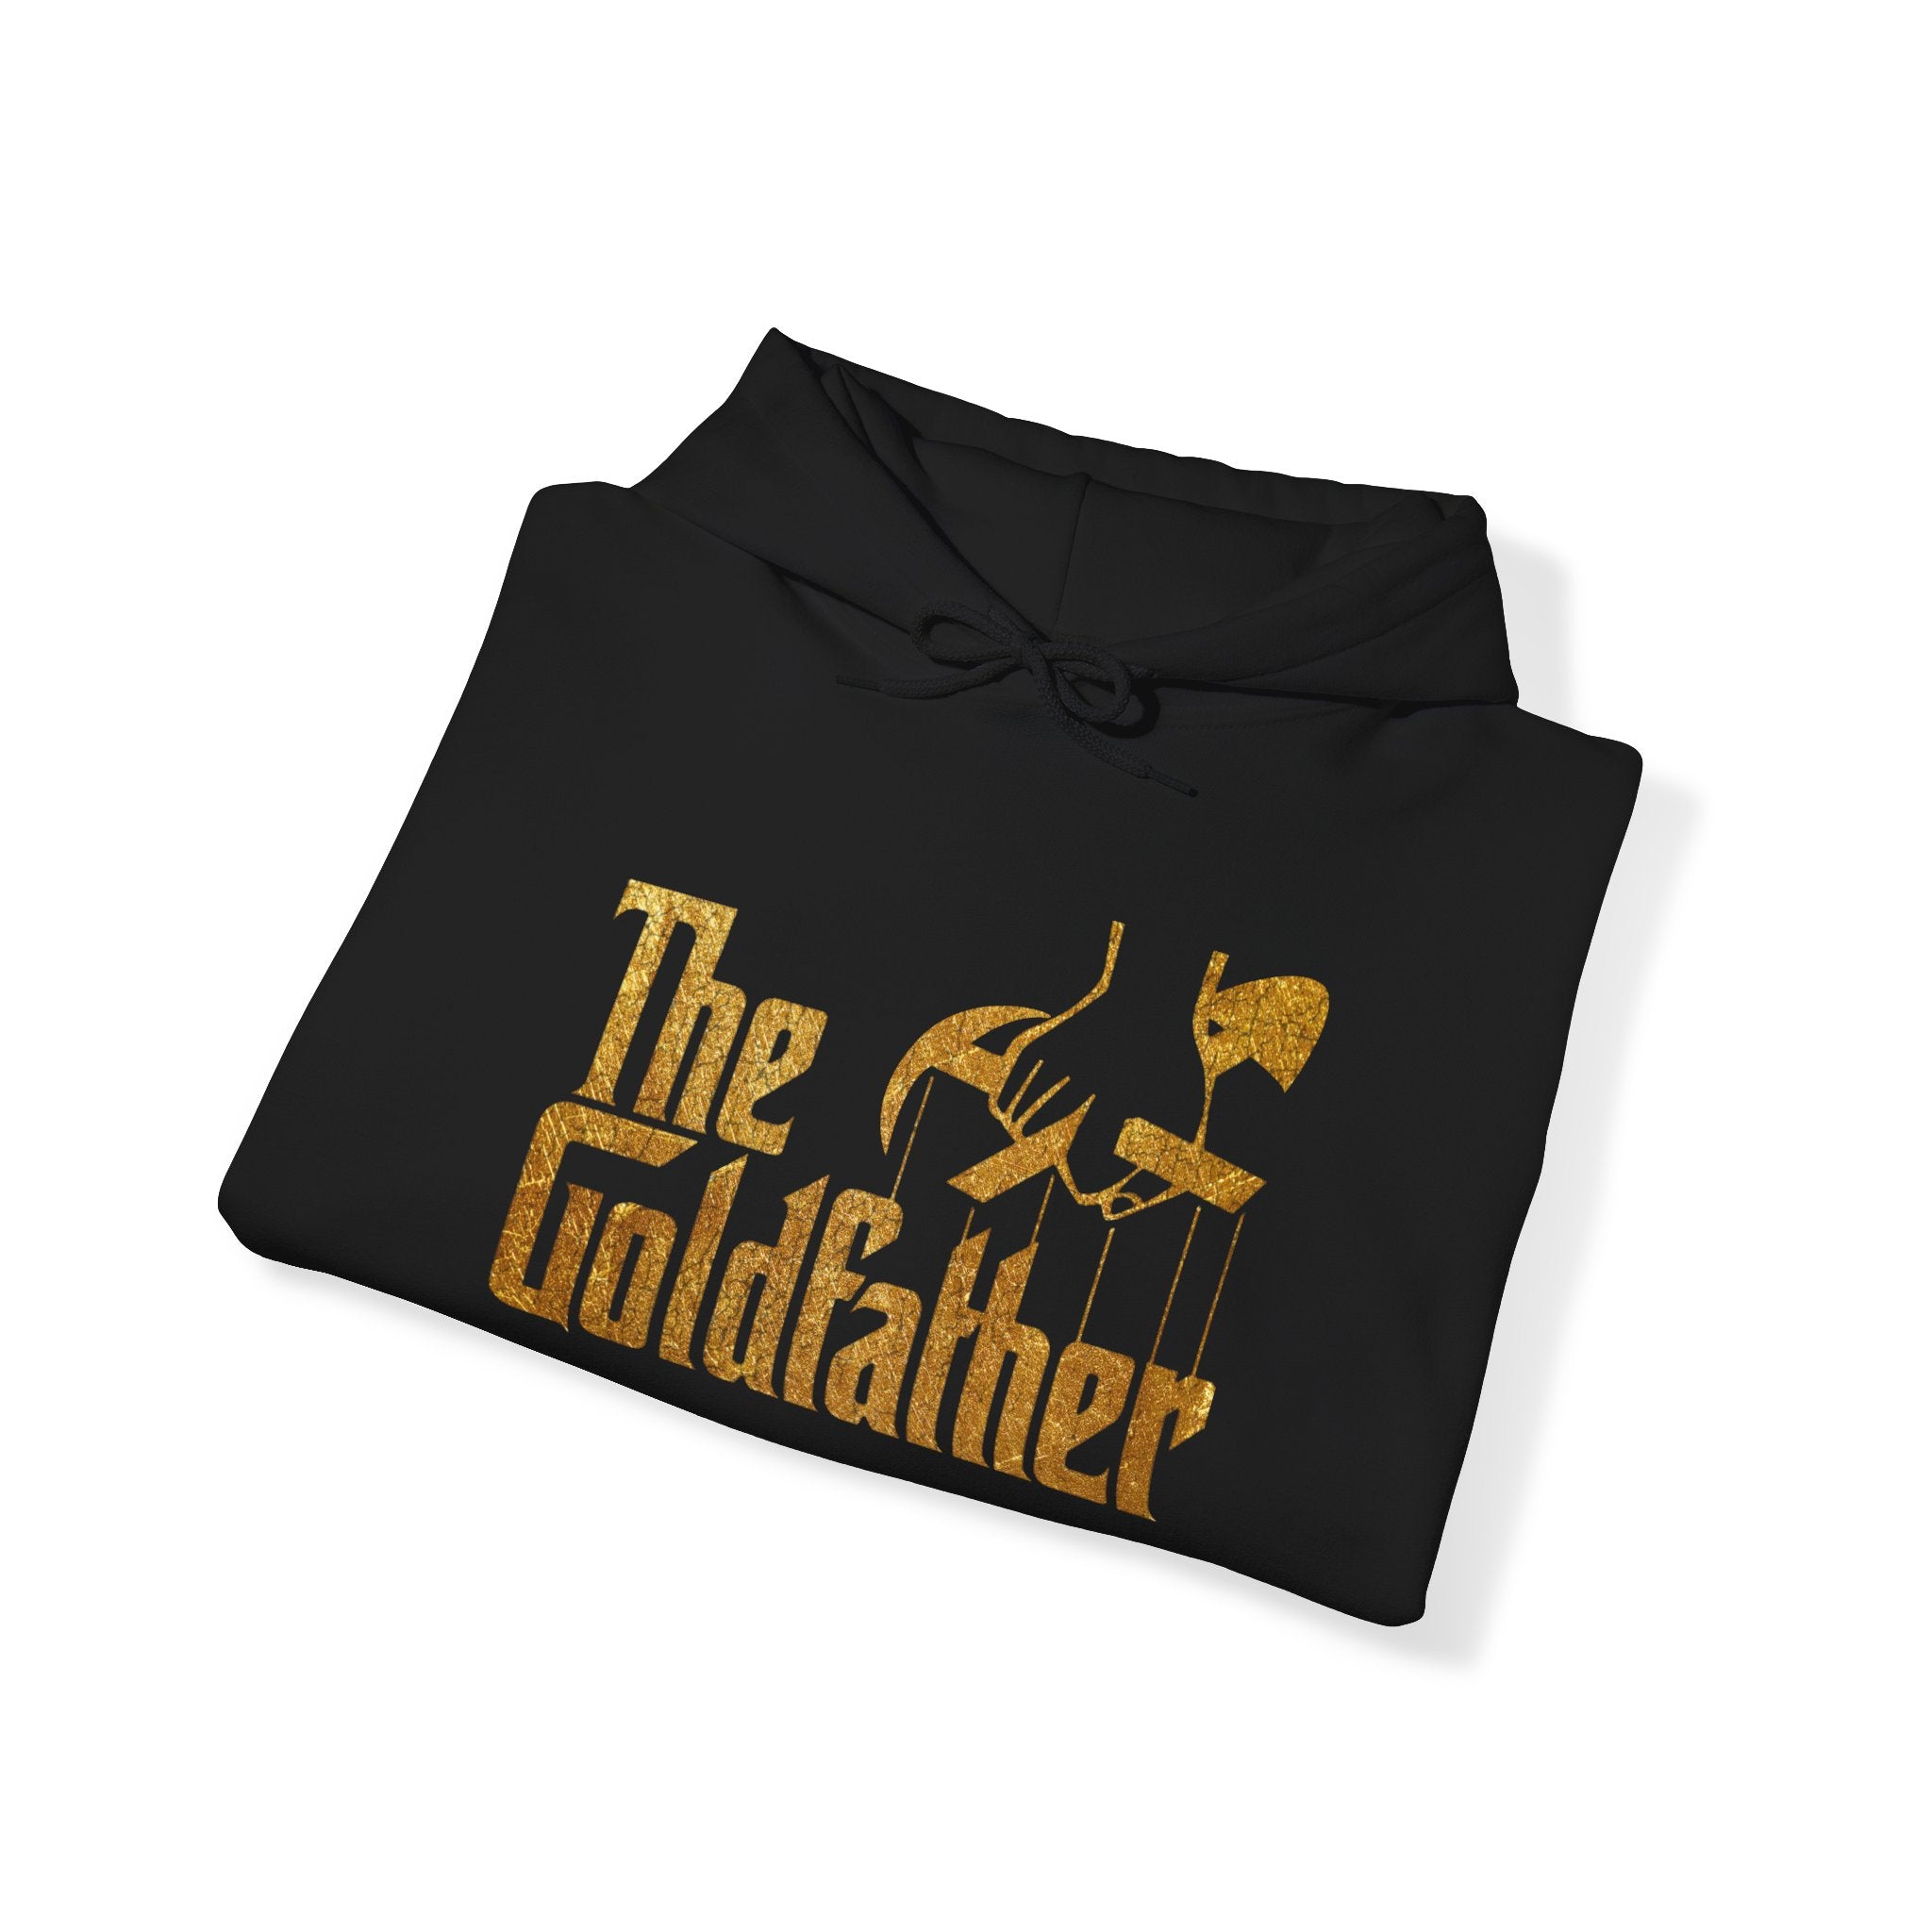 The Goldfather Hooded Sweatshirt